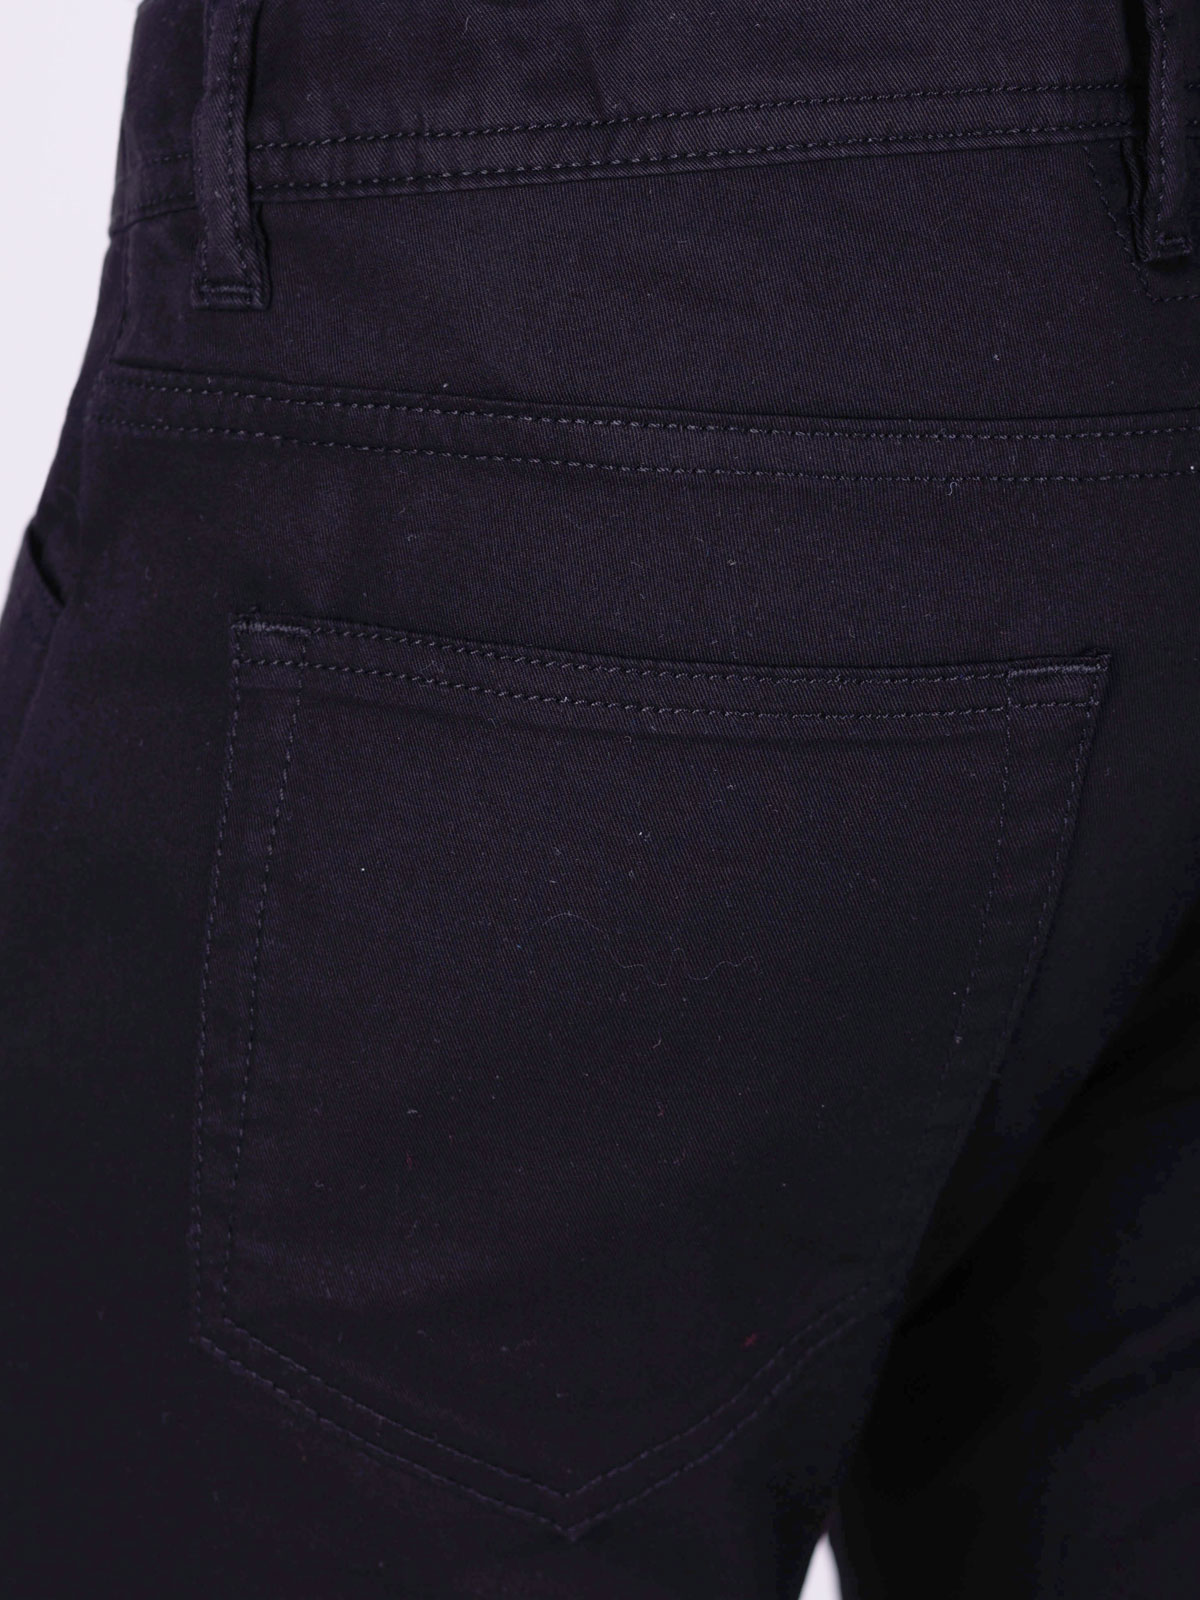 Παντελόνι σε μαύρο χρώμα με πέντε τσέπες - 60300 € 66.37 img4